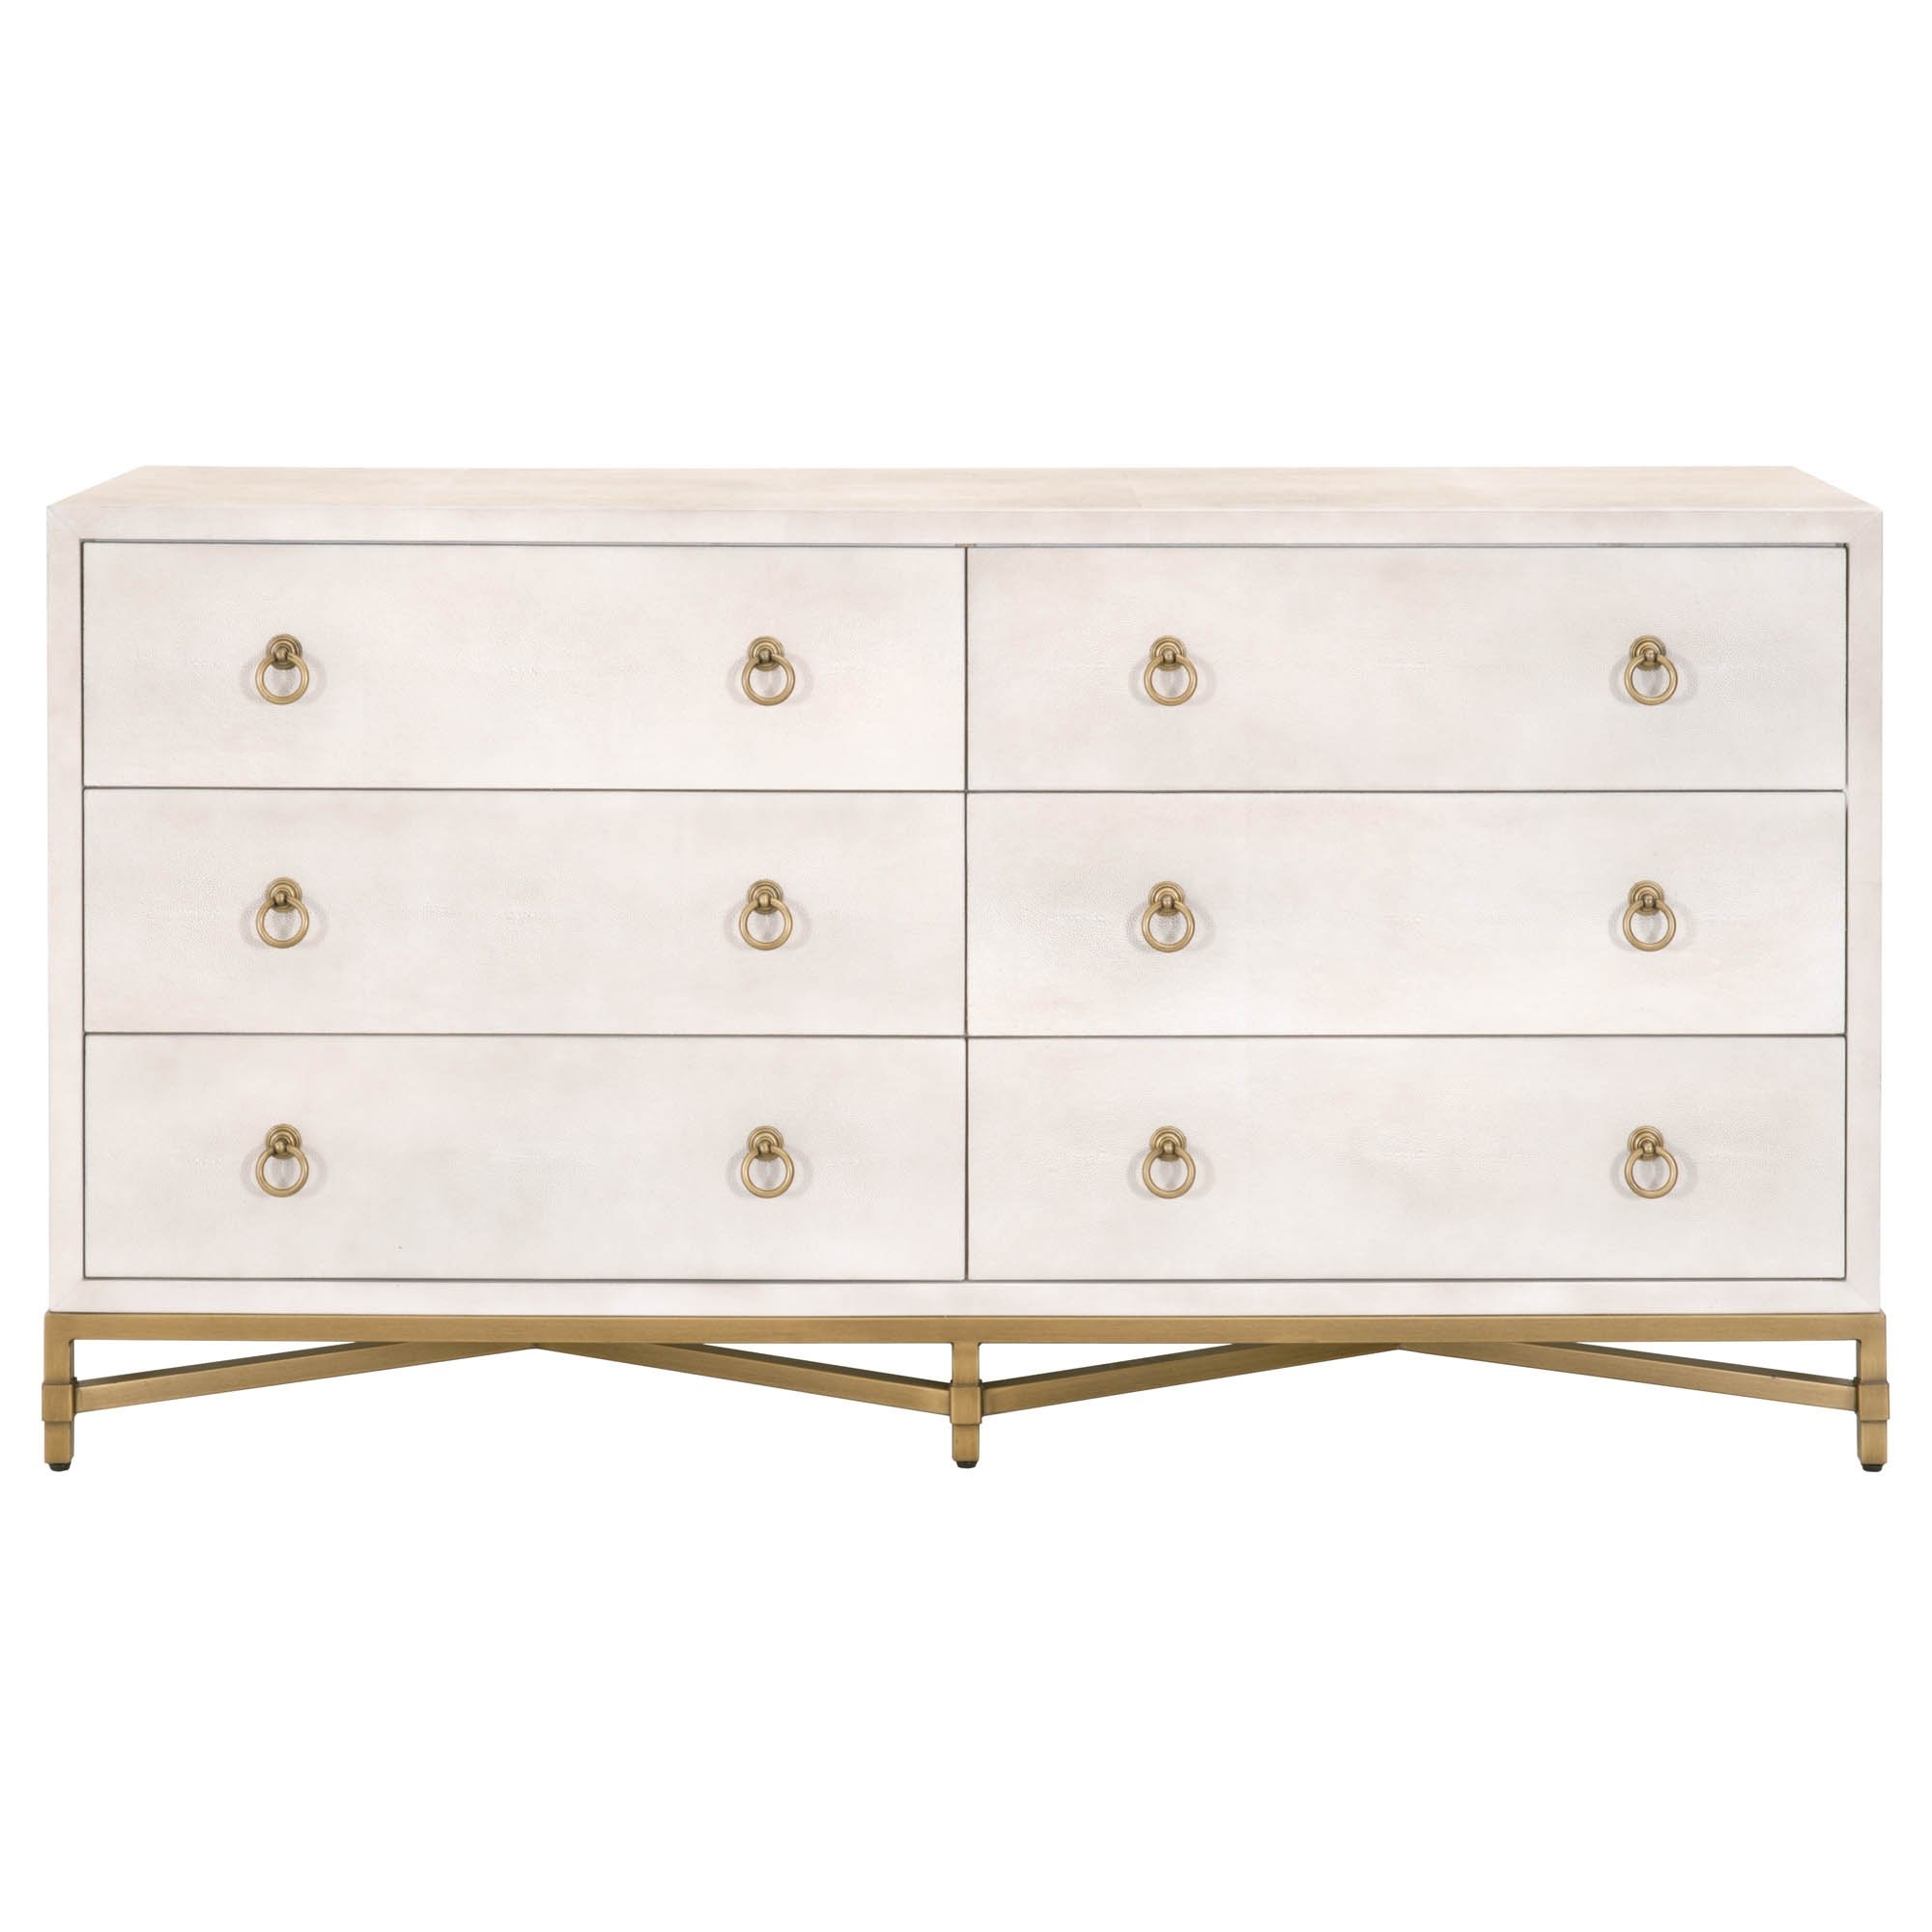 Strand Shagreen 6-Drawer Double Dresser, White & Gold - Image 0